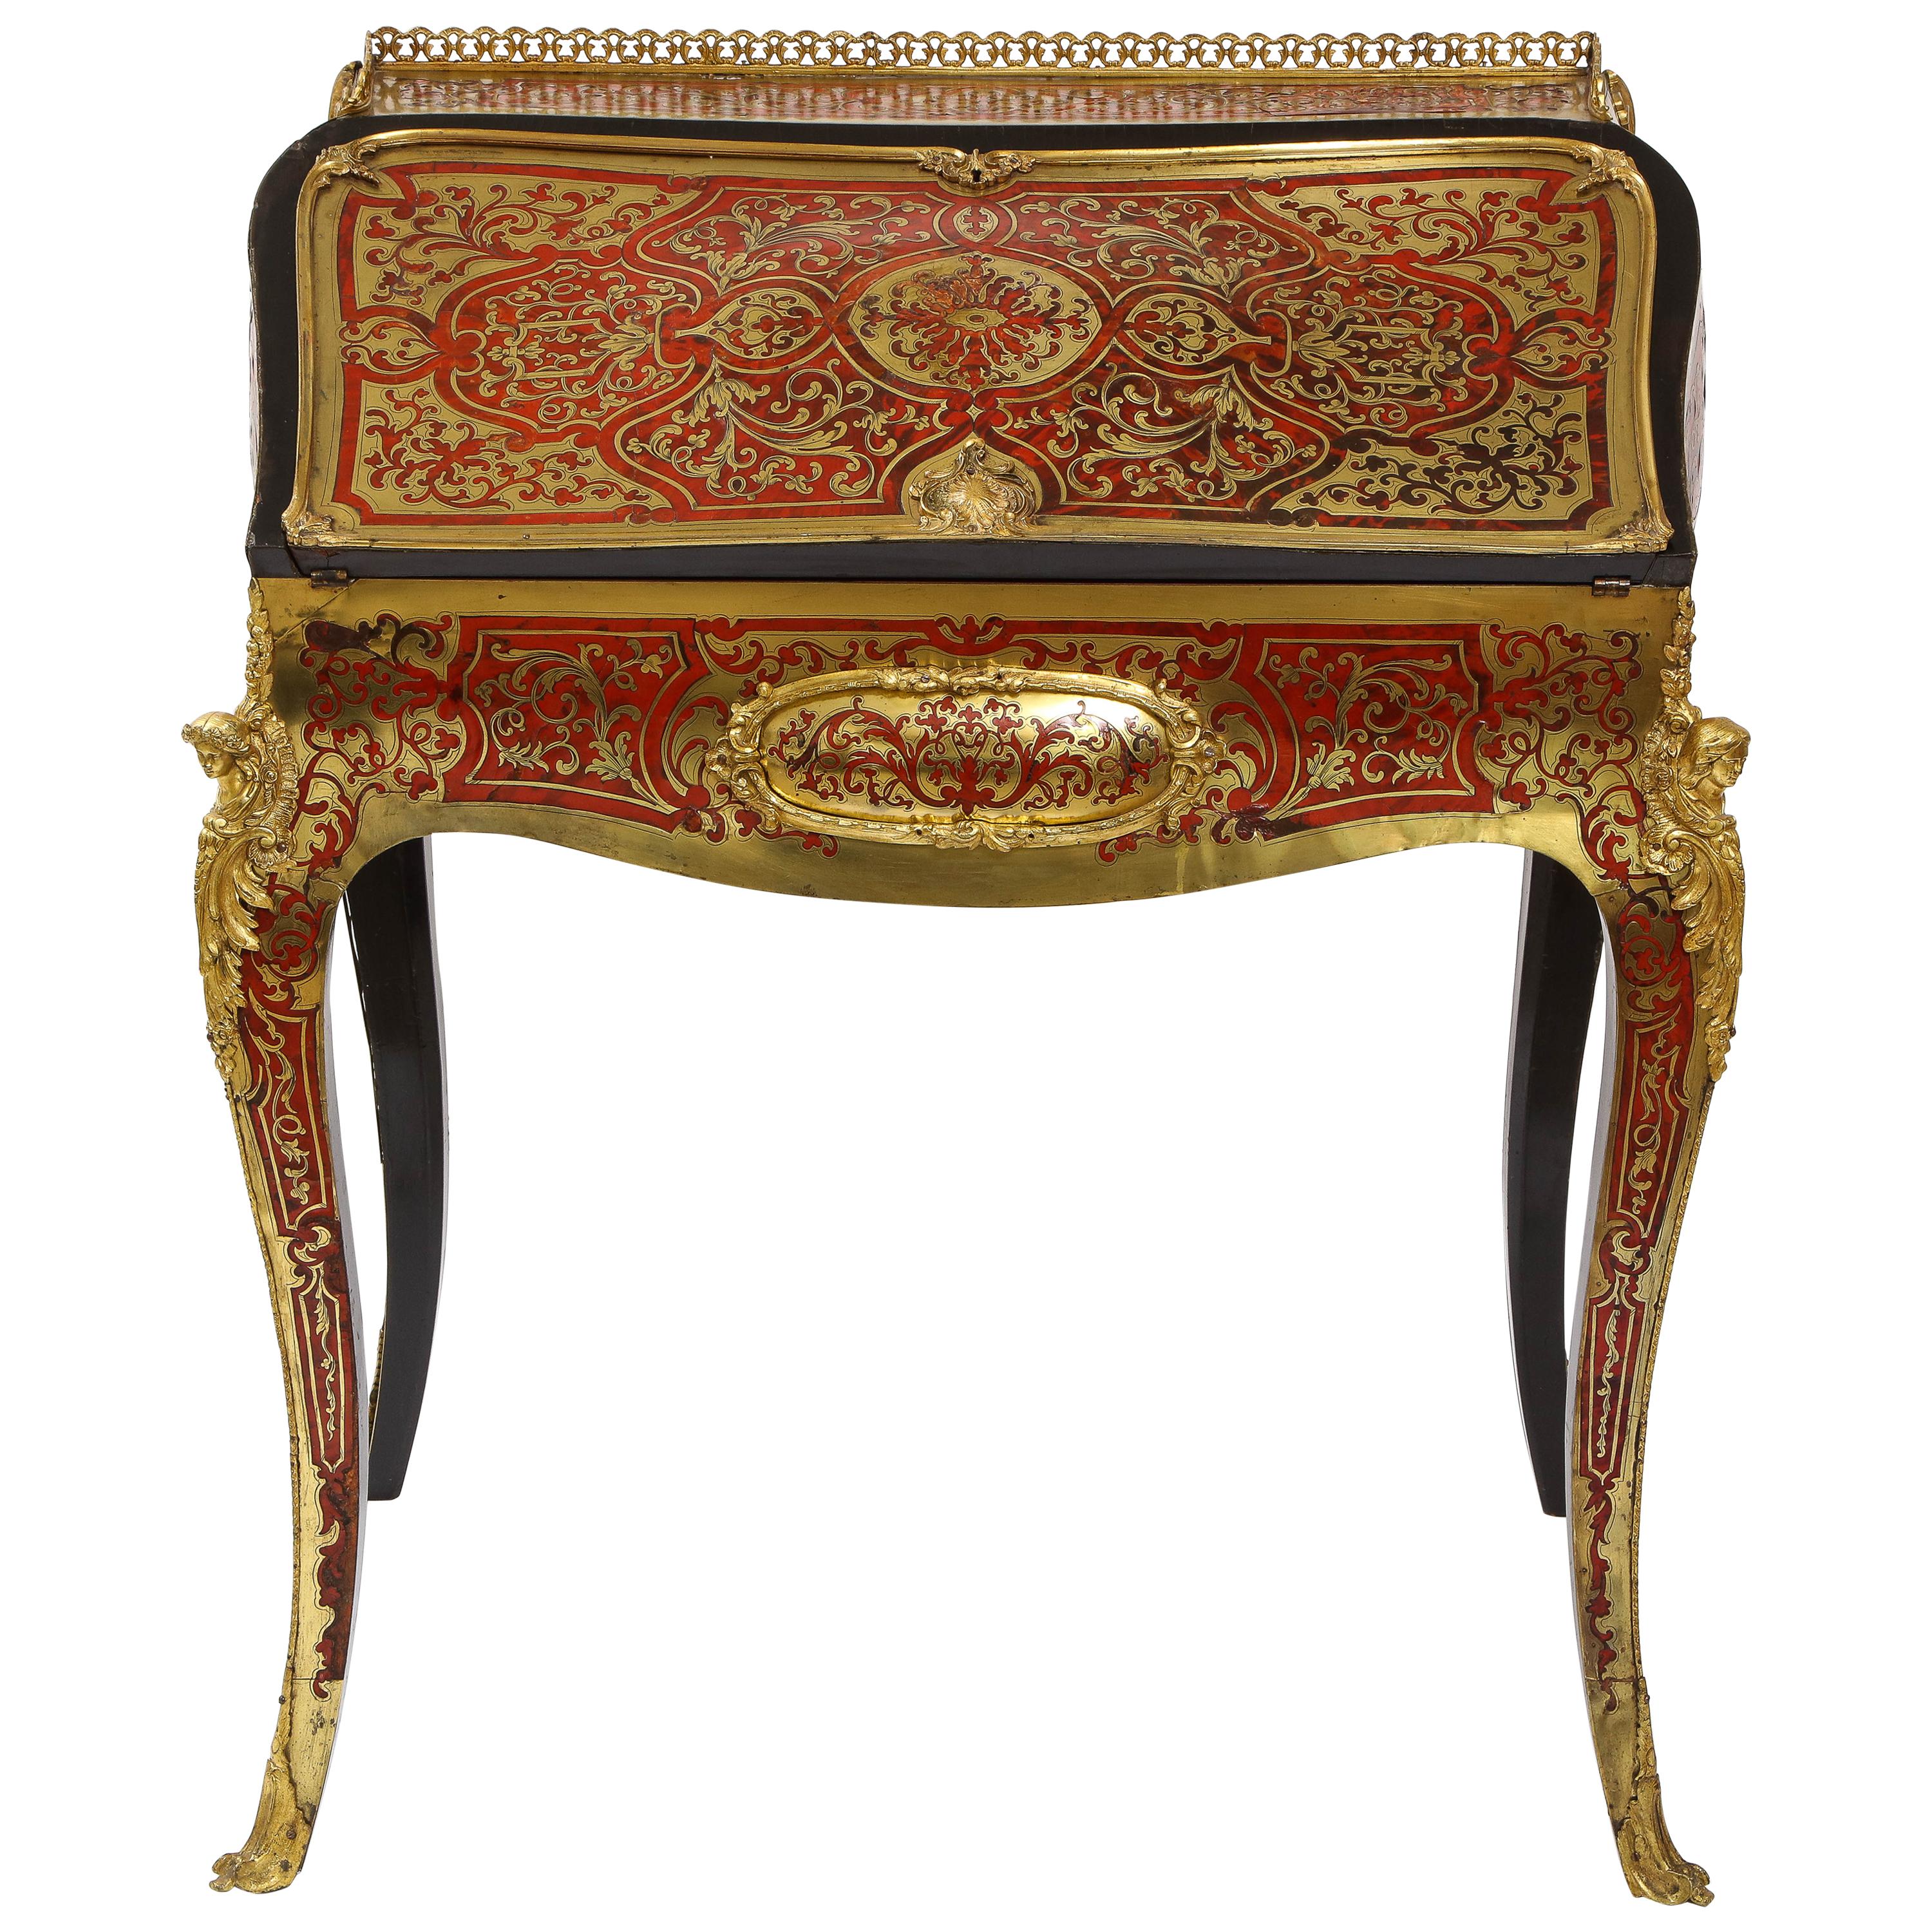 Eine wunderschöne Louis XV Stil Französisch dore Bronze montiert Boulle Marquetry Sekretär Schreibtisch oder Schrank. Mit einer zylindrischen Form aus ebonisiertem Furnier und Boulle mit Dore-Bronze-Beschlägen auf einem prächtigen